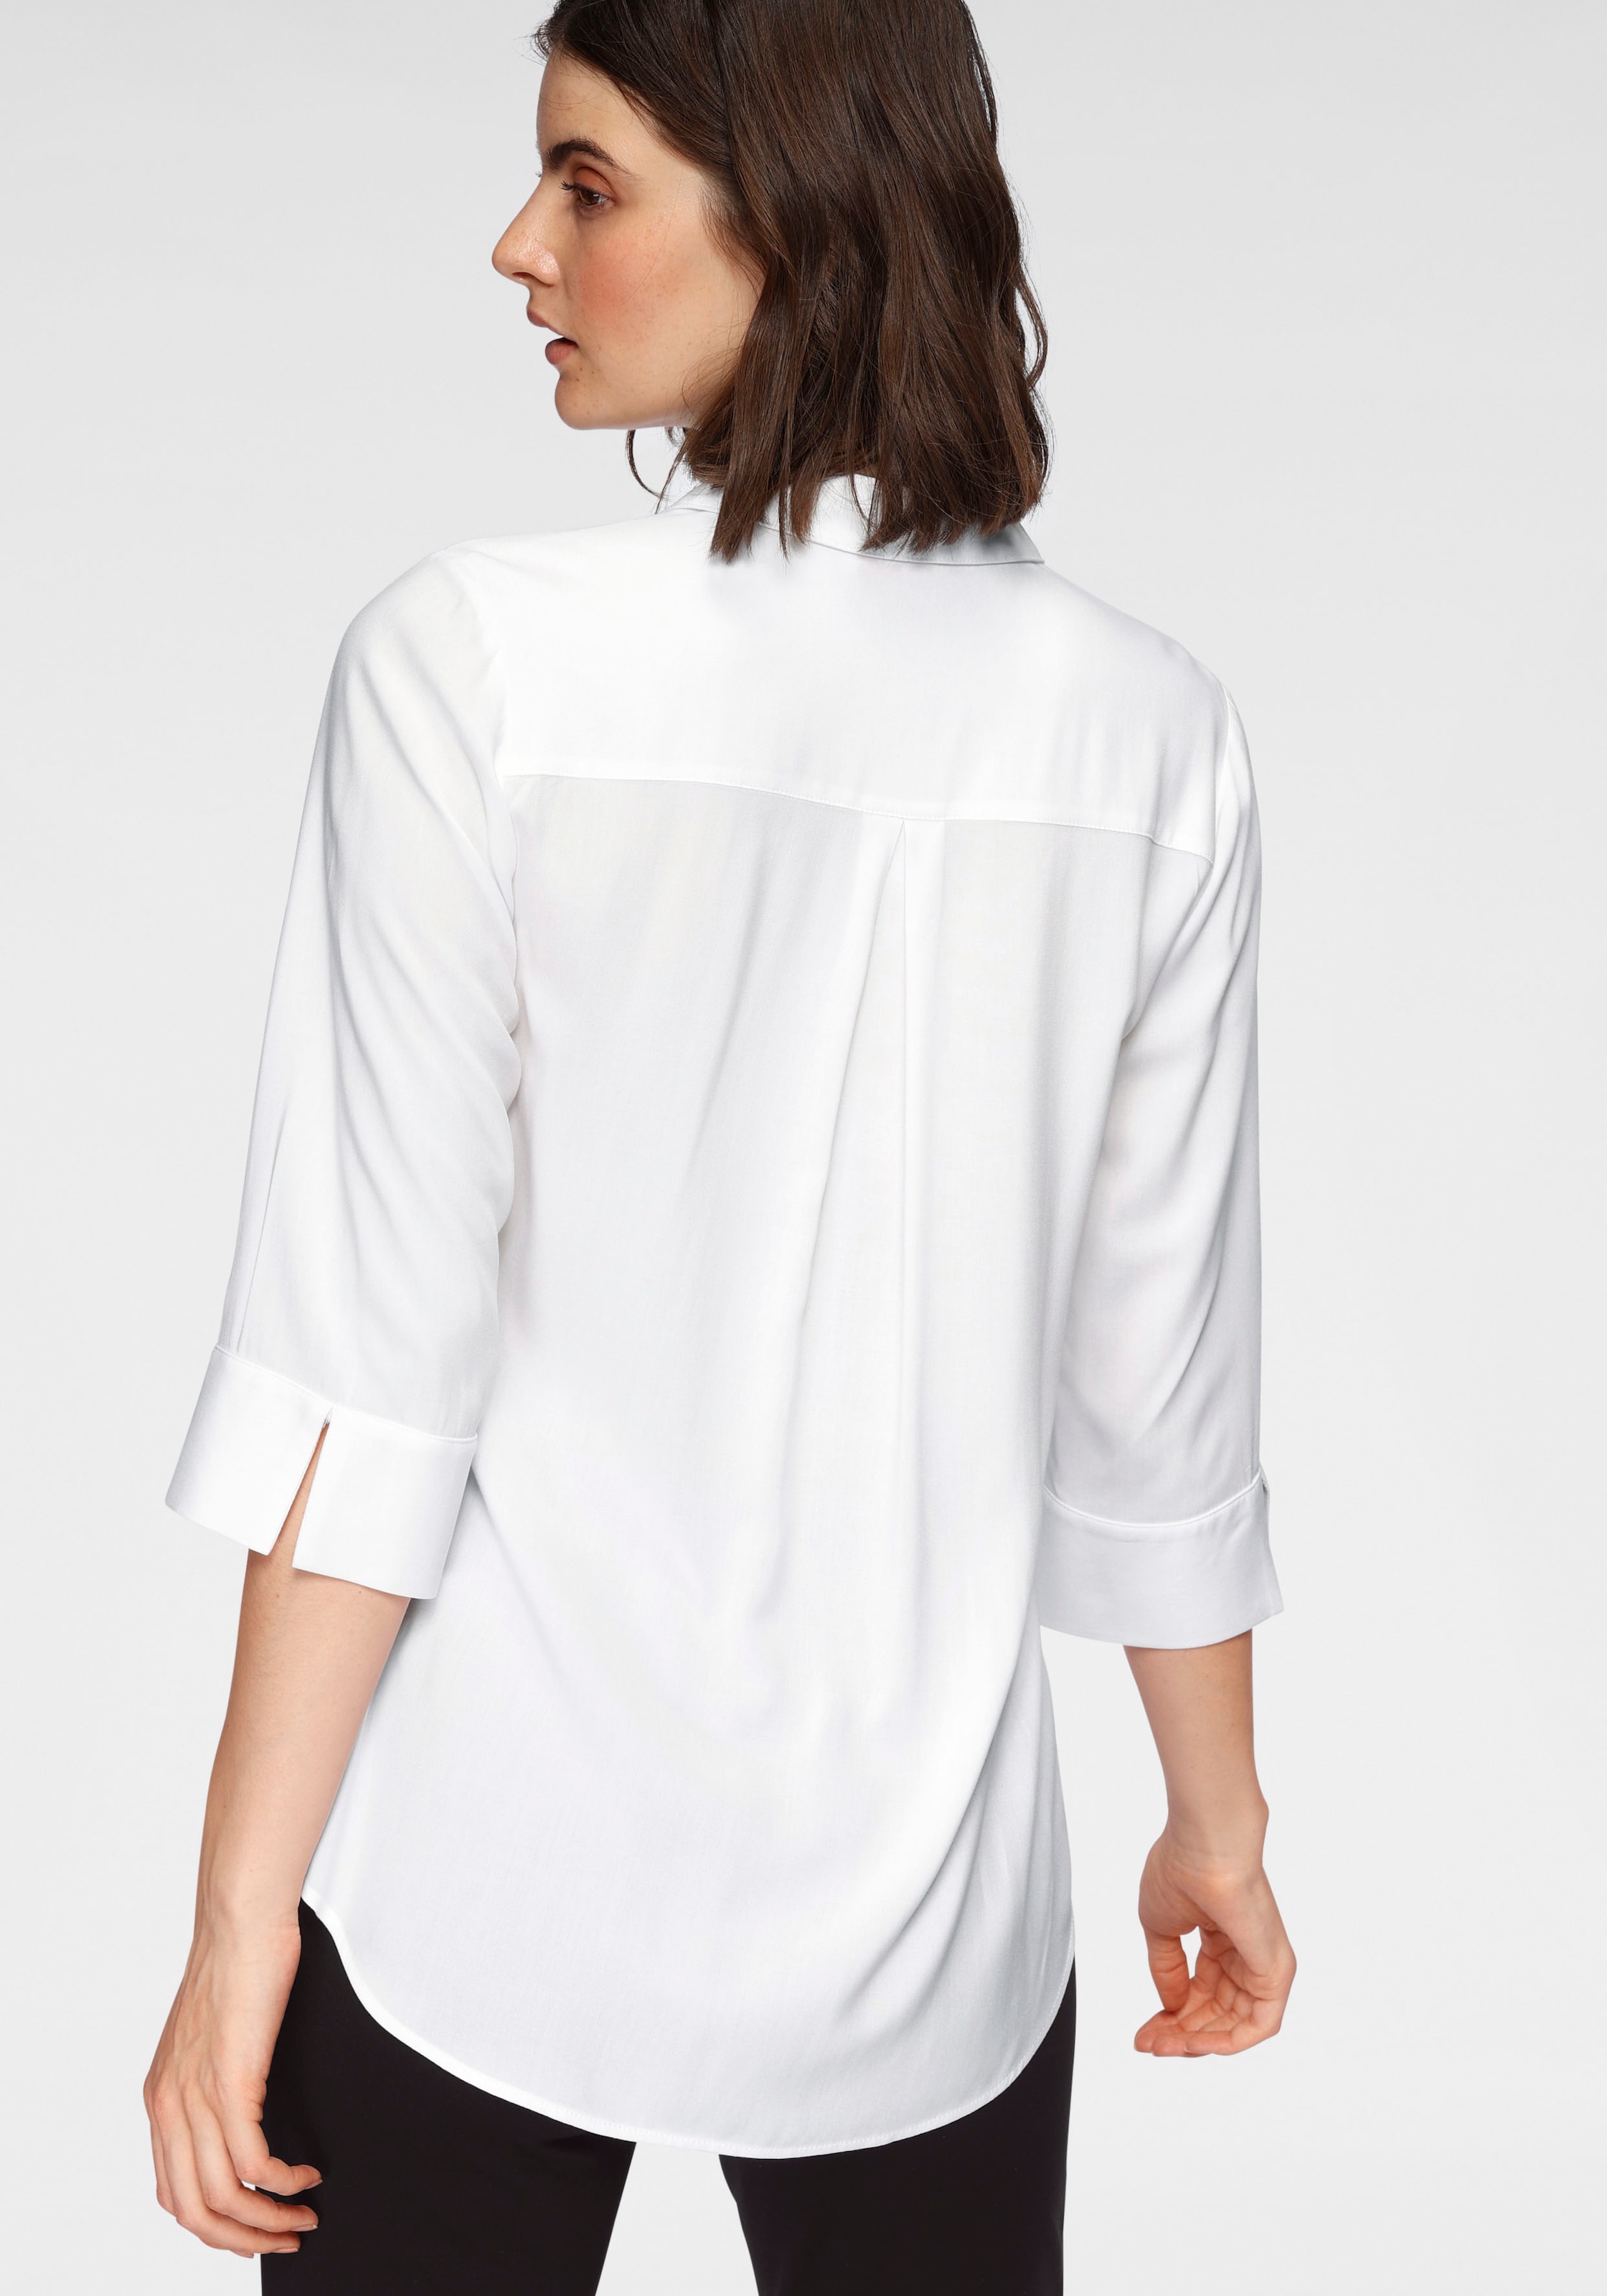 Viskose weicher OTTO kaufen online ECOVERO™ Bluse, aus products Klassische LENZING™ nachhaltig